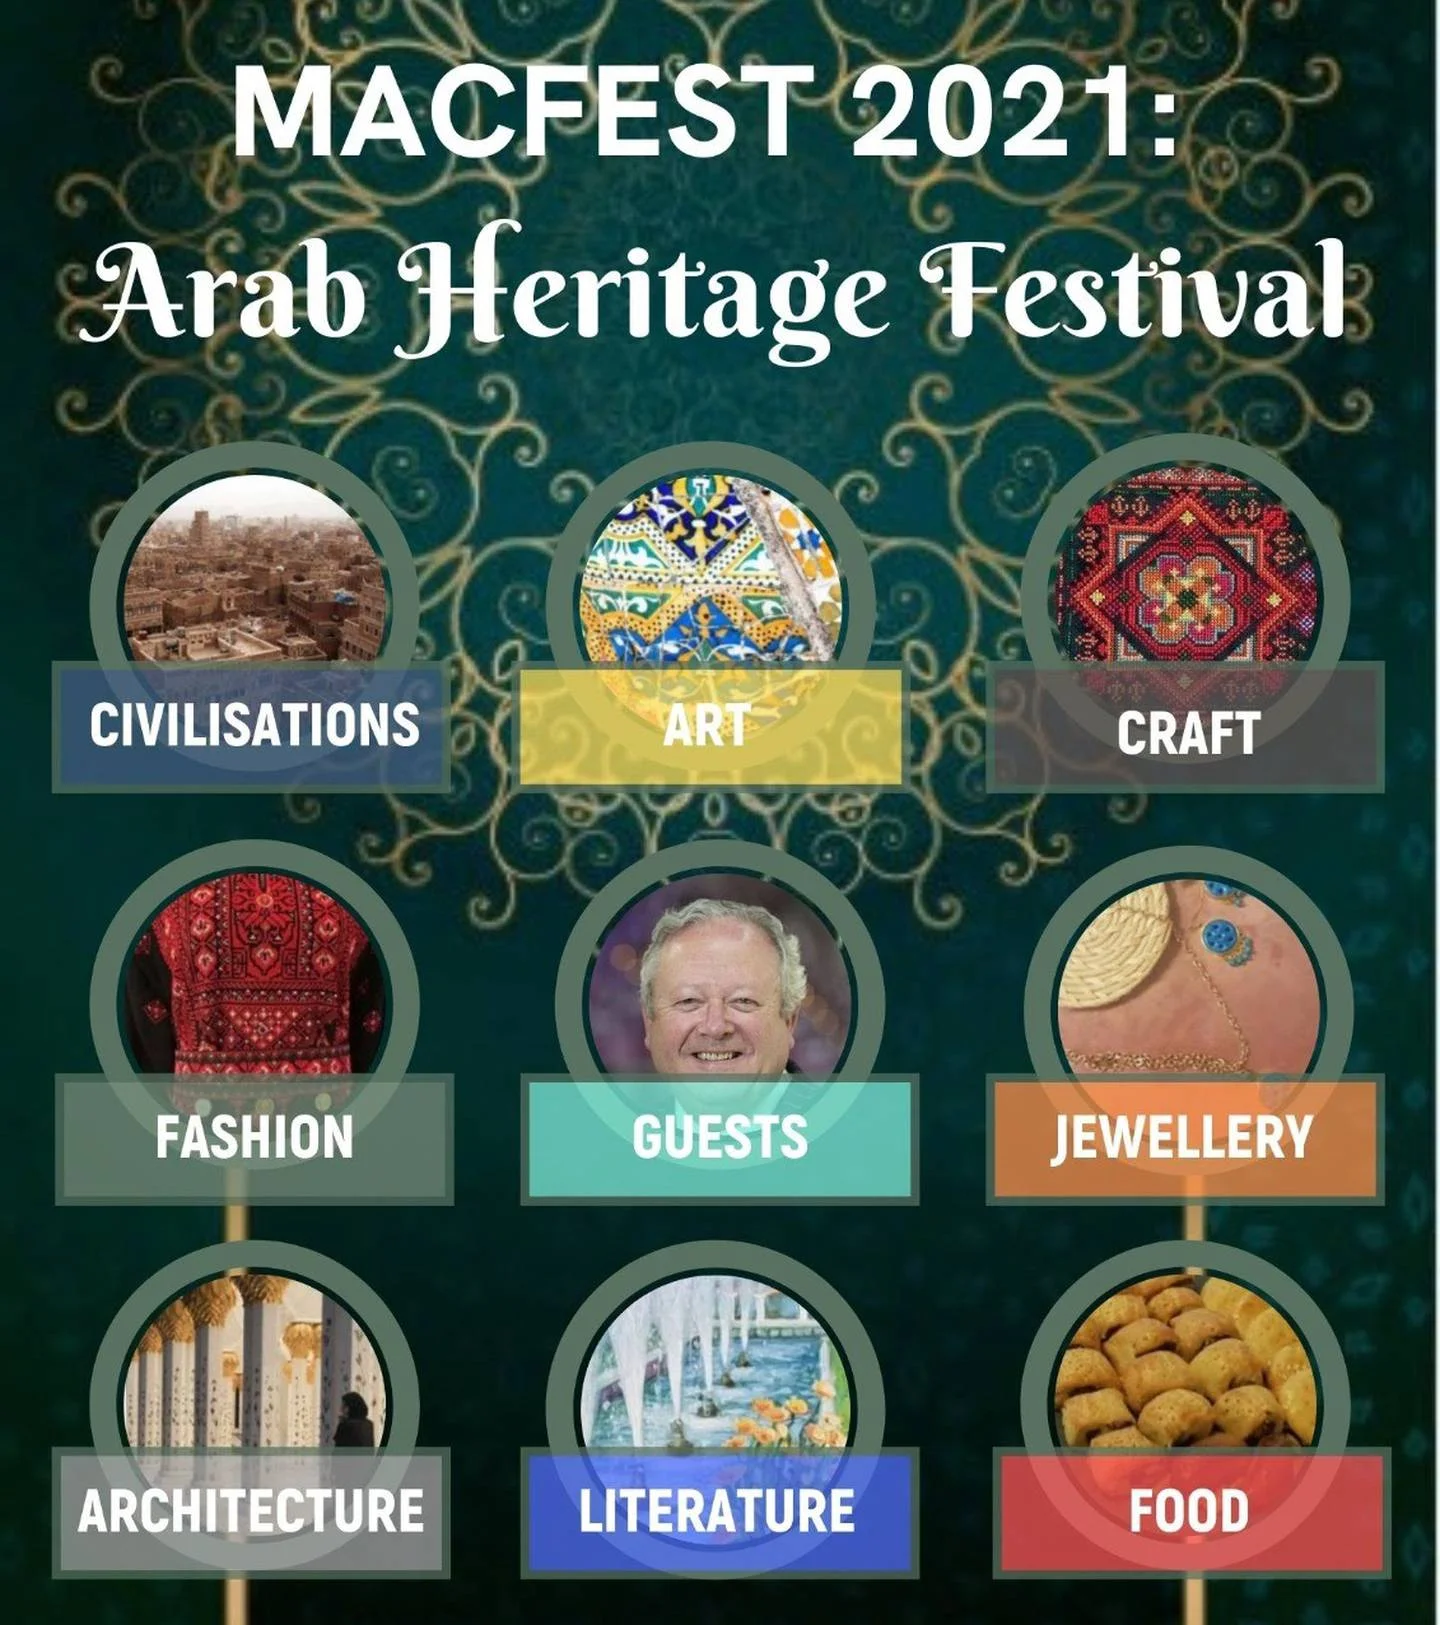 Arab Heritage Festival in UK